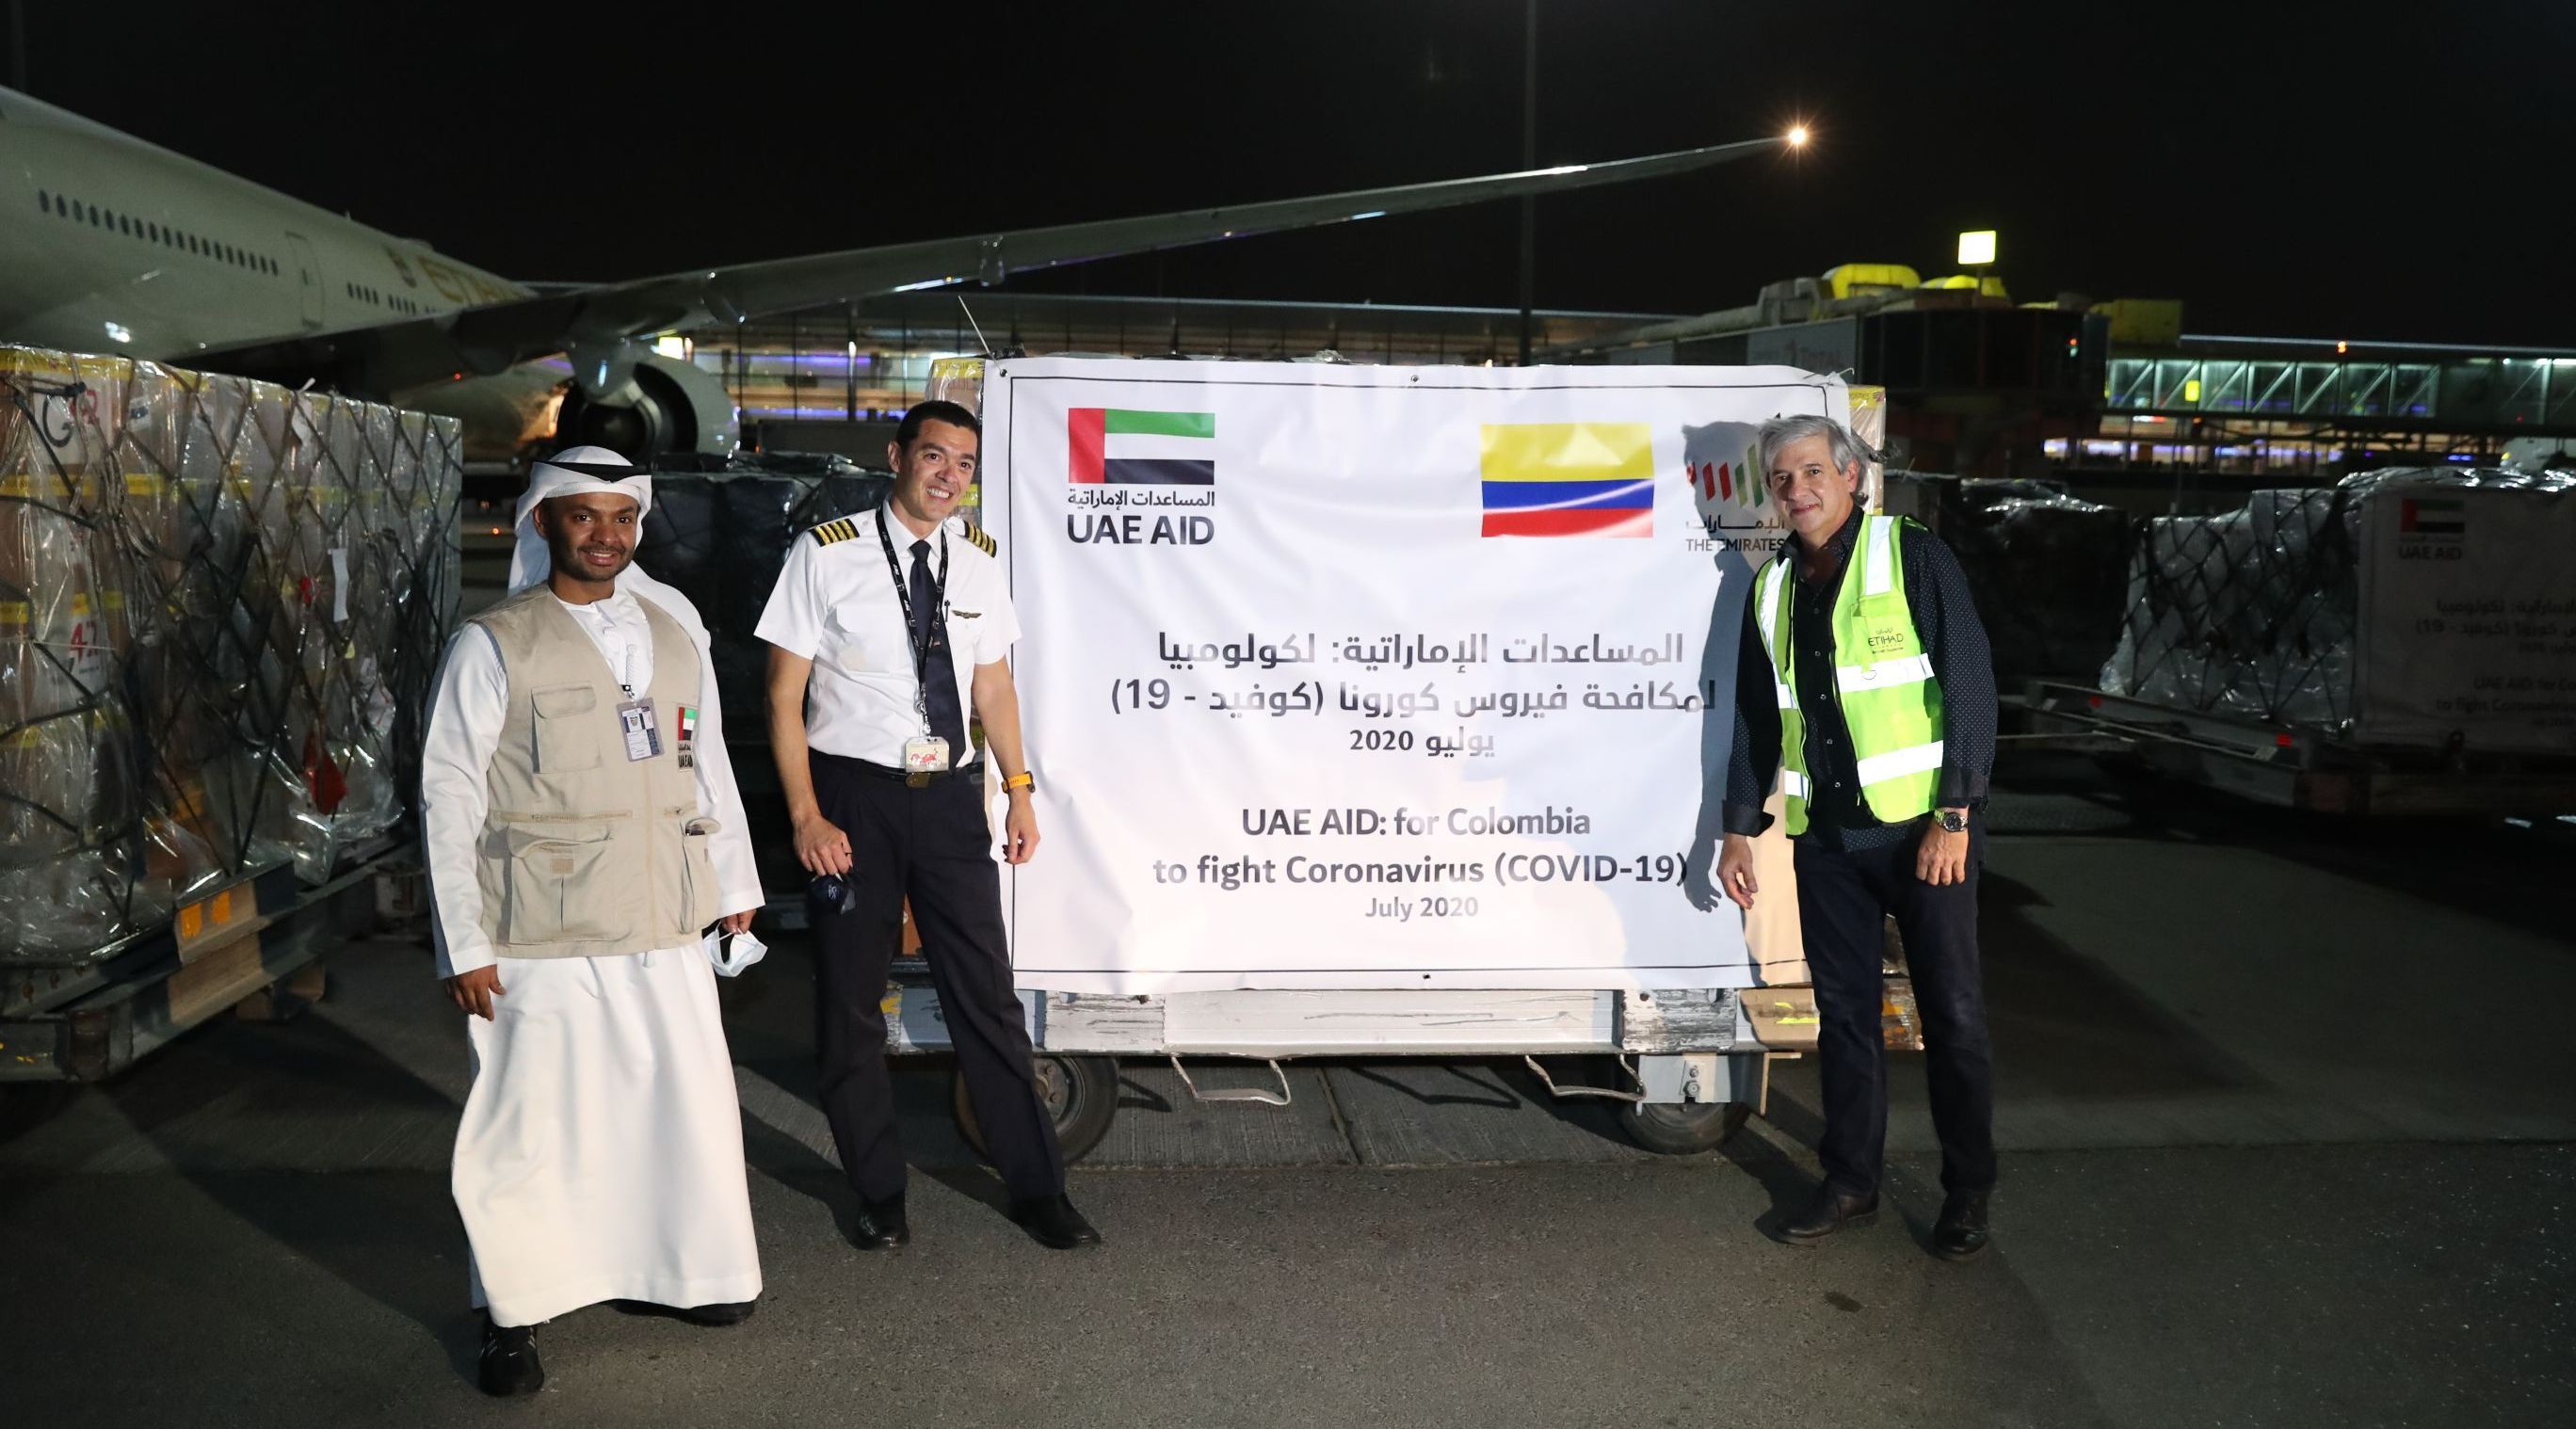 الإمارات ترسل ثالث طائرة مساعدات إلى كولومبيا للتغلب على كورونا